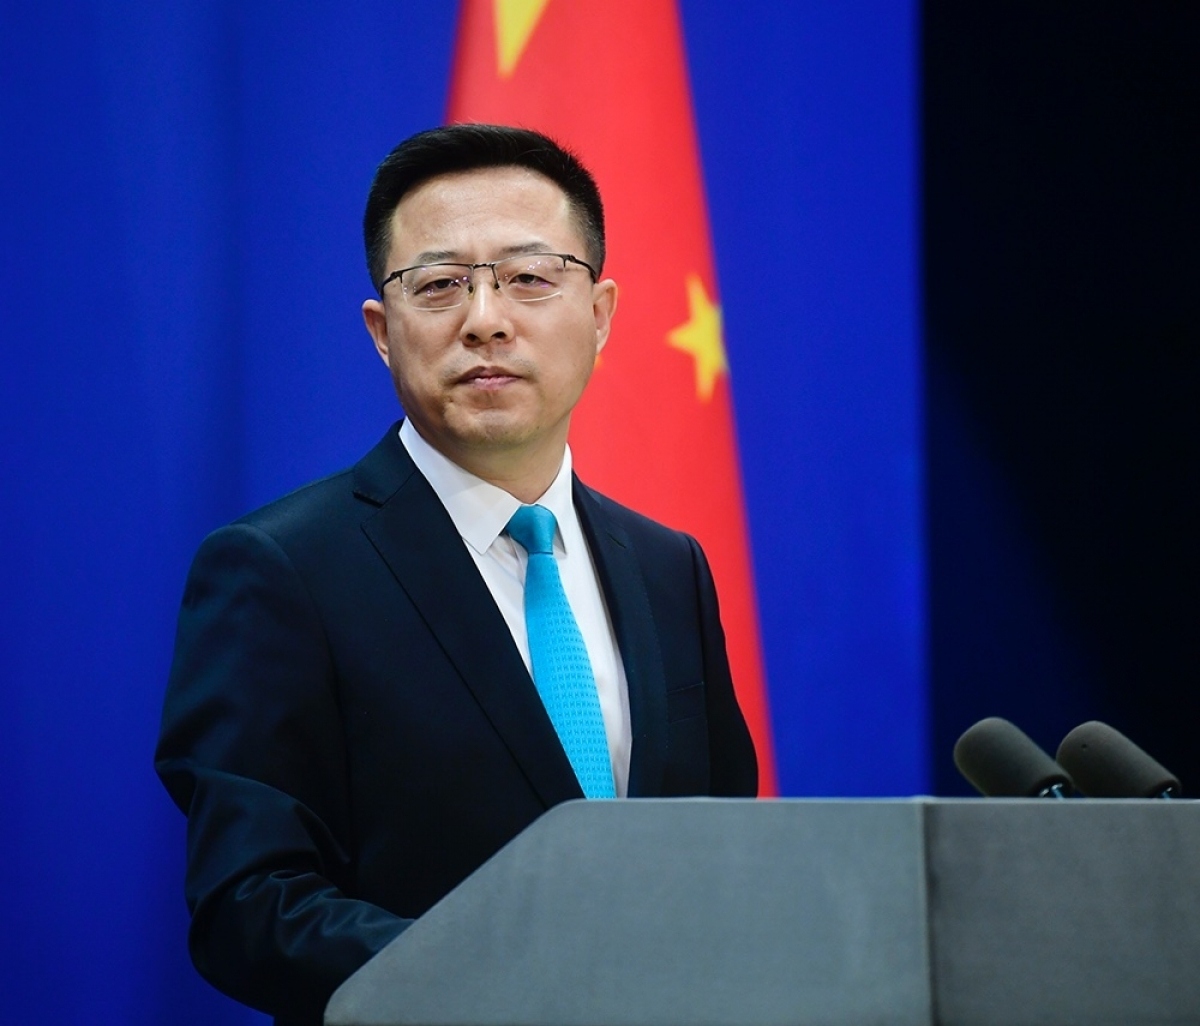 Trung Quốc phản đối Mỹ mời Đài Loan tham dự "Hội nghị Thượng đỉnh vì dân chủ"